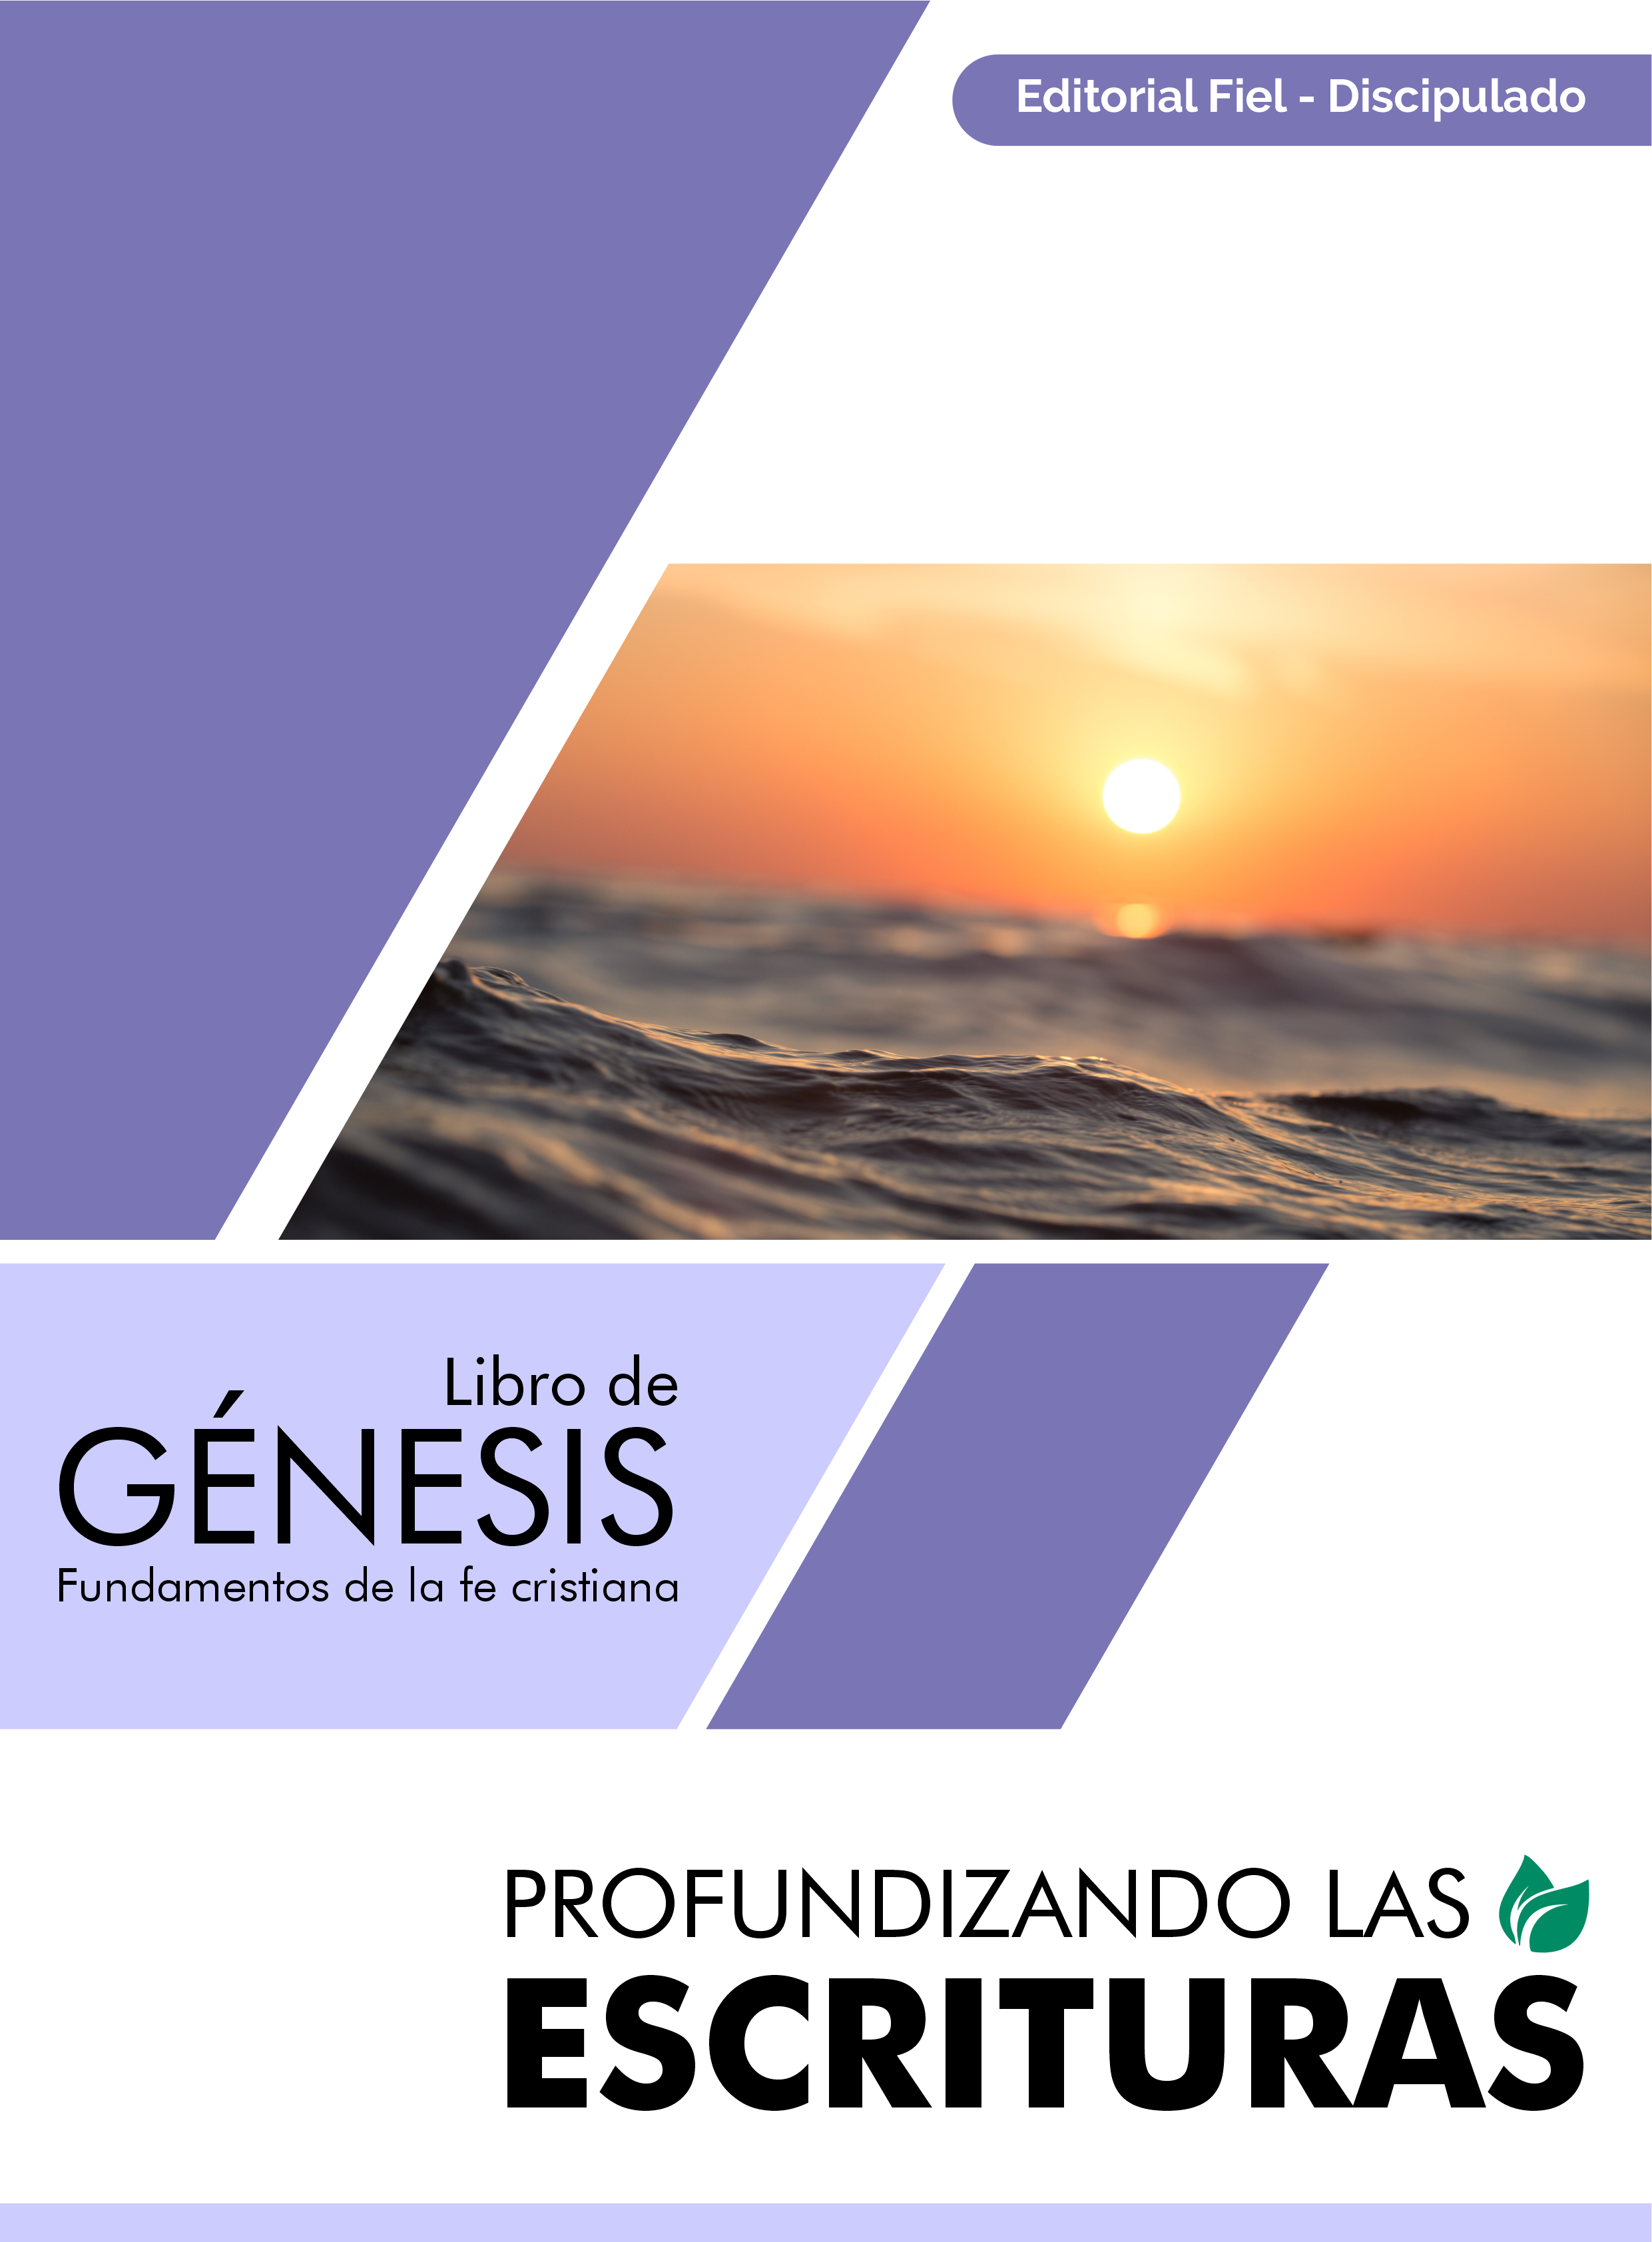 Genesis14